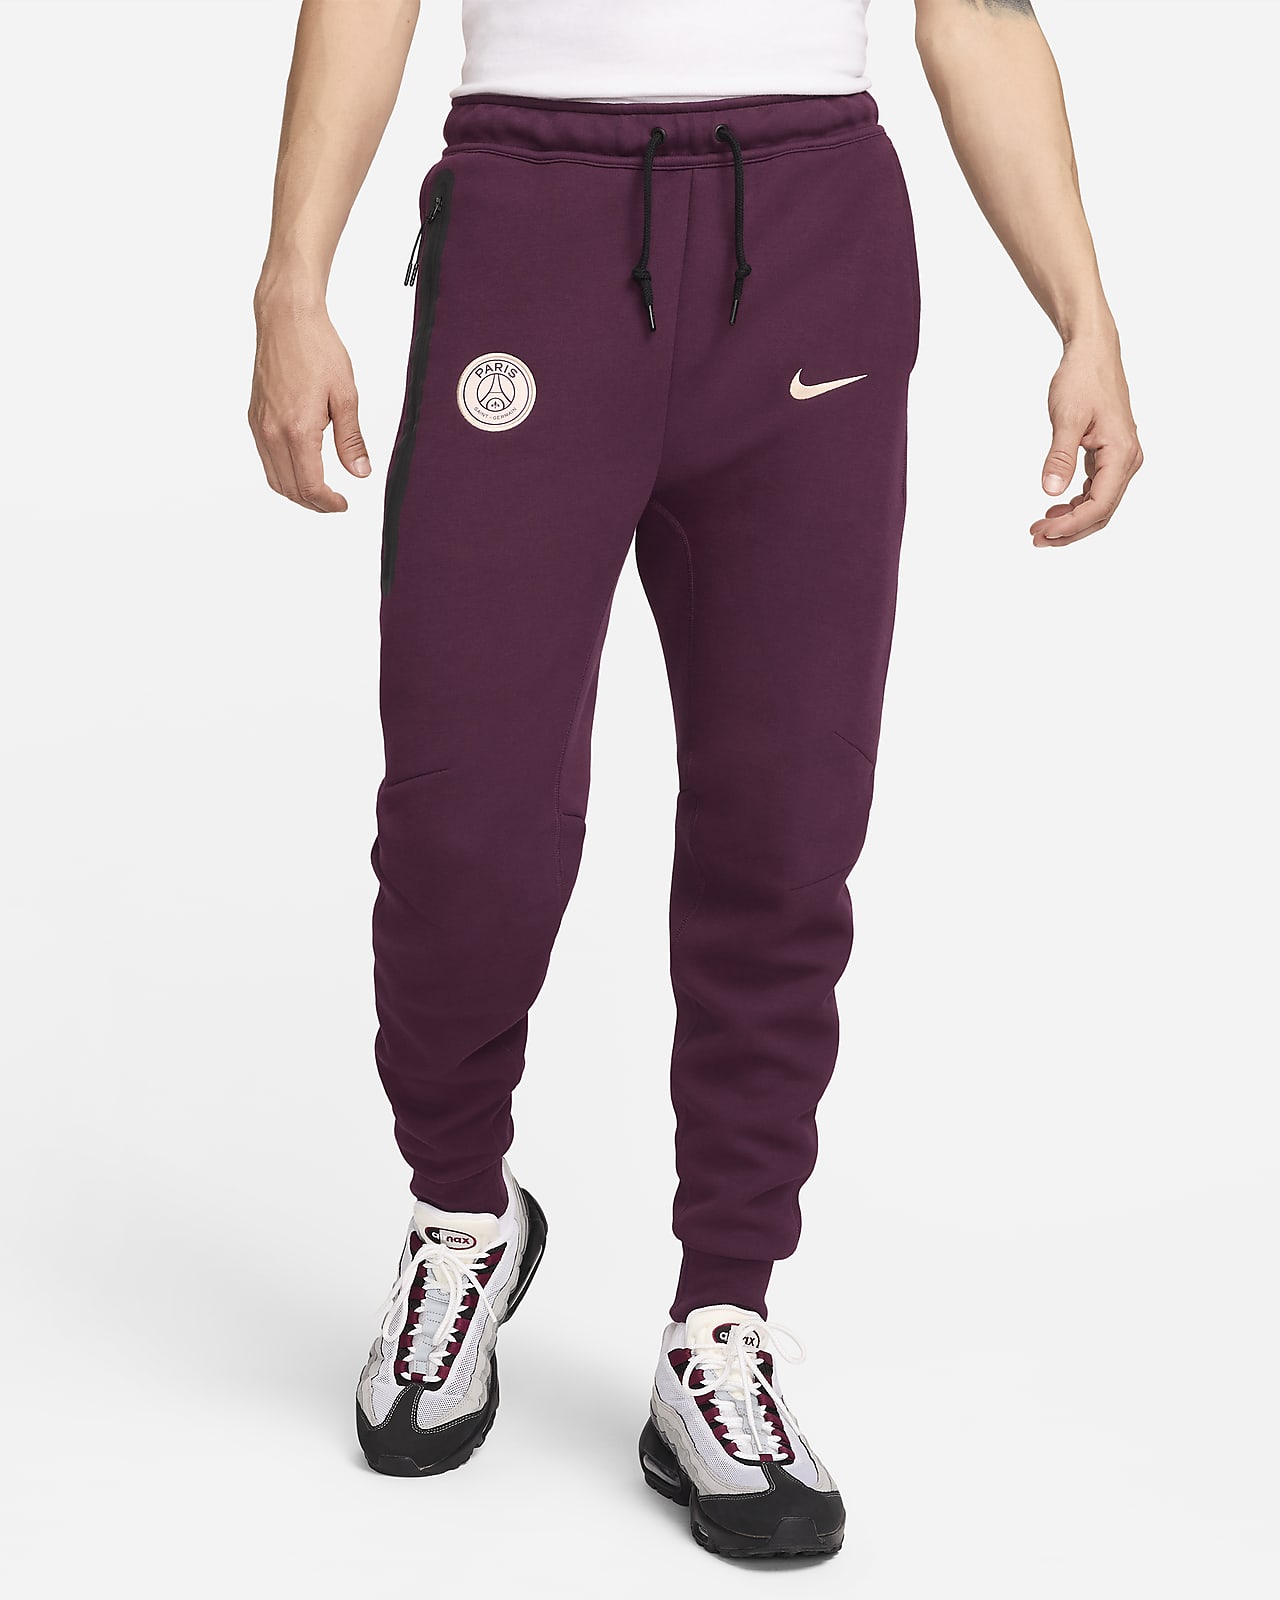 Ανδρικό ποδοσφαιρικό παντελόνι φόρμας Παρί Σεν Ζερμέν Nike Tech Fleece